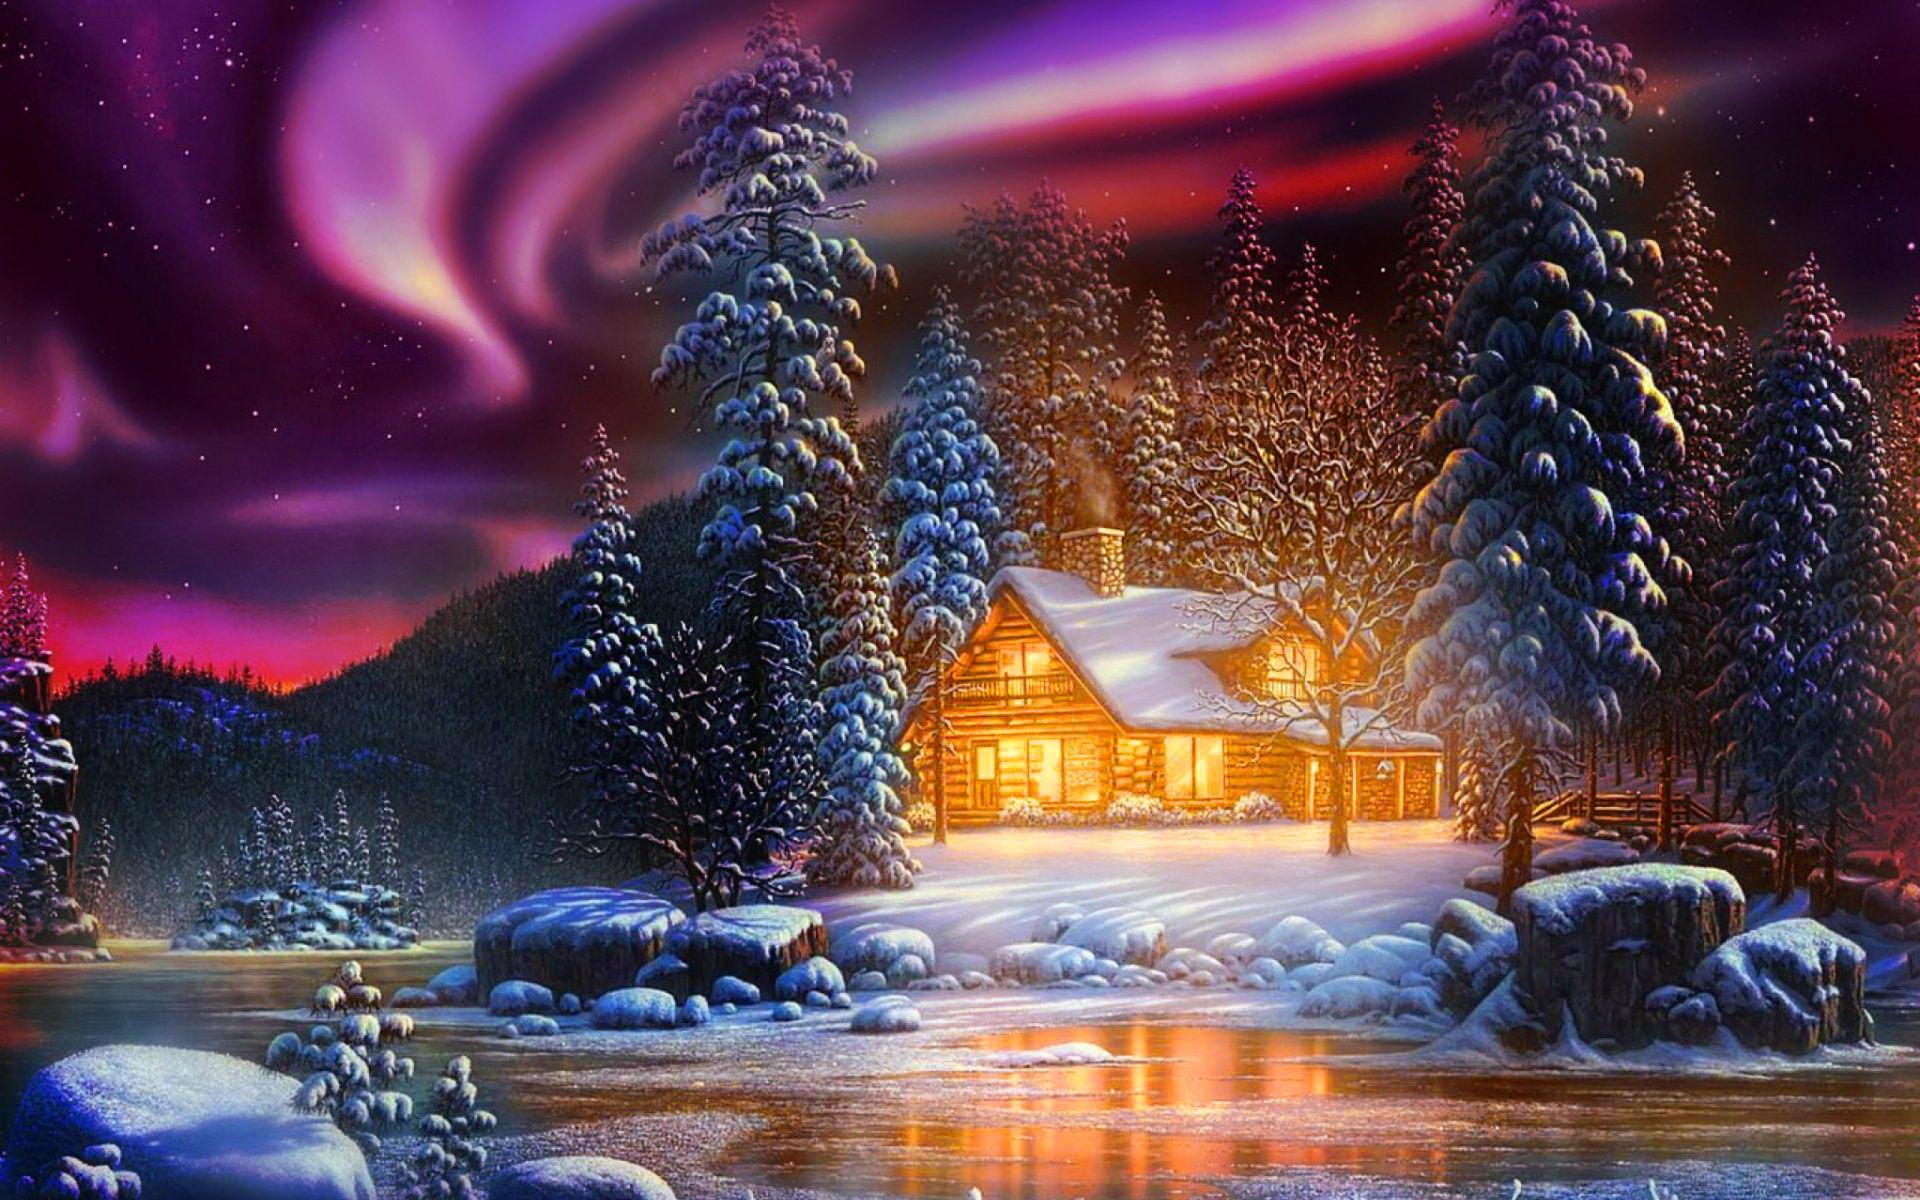 190-1903150_cozy-winter-wallpaper-winter-landscape.jpg